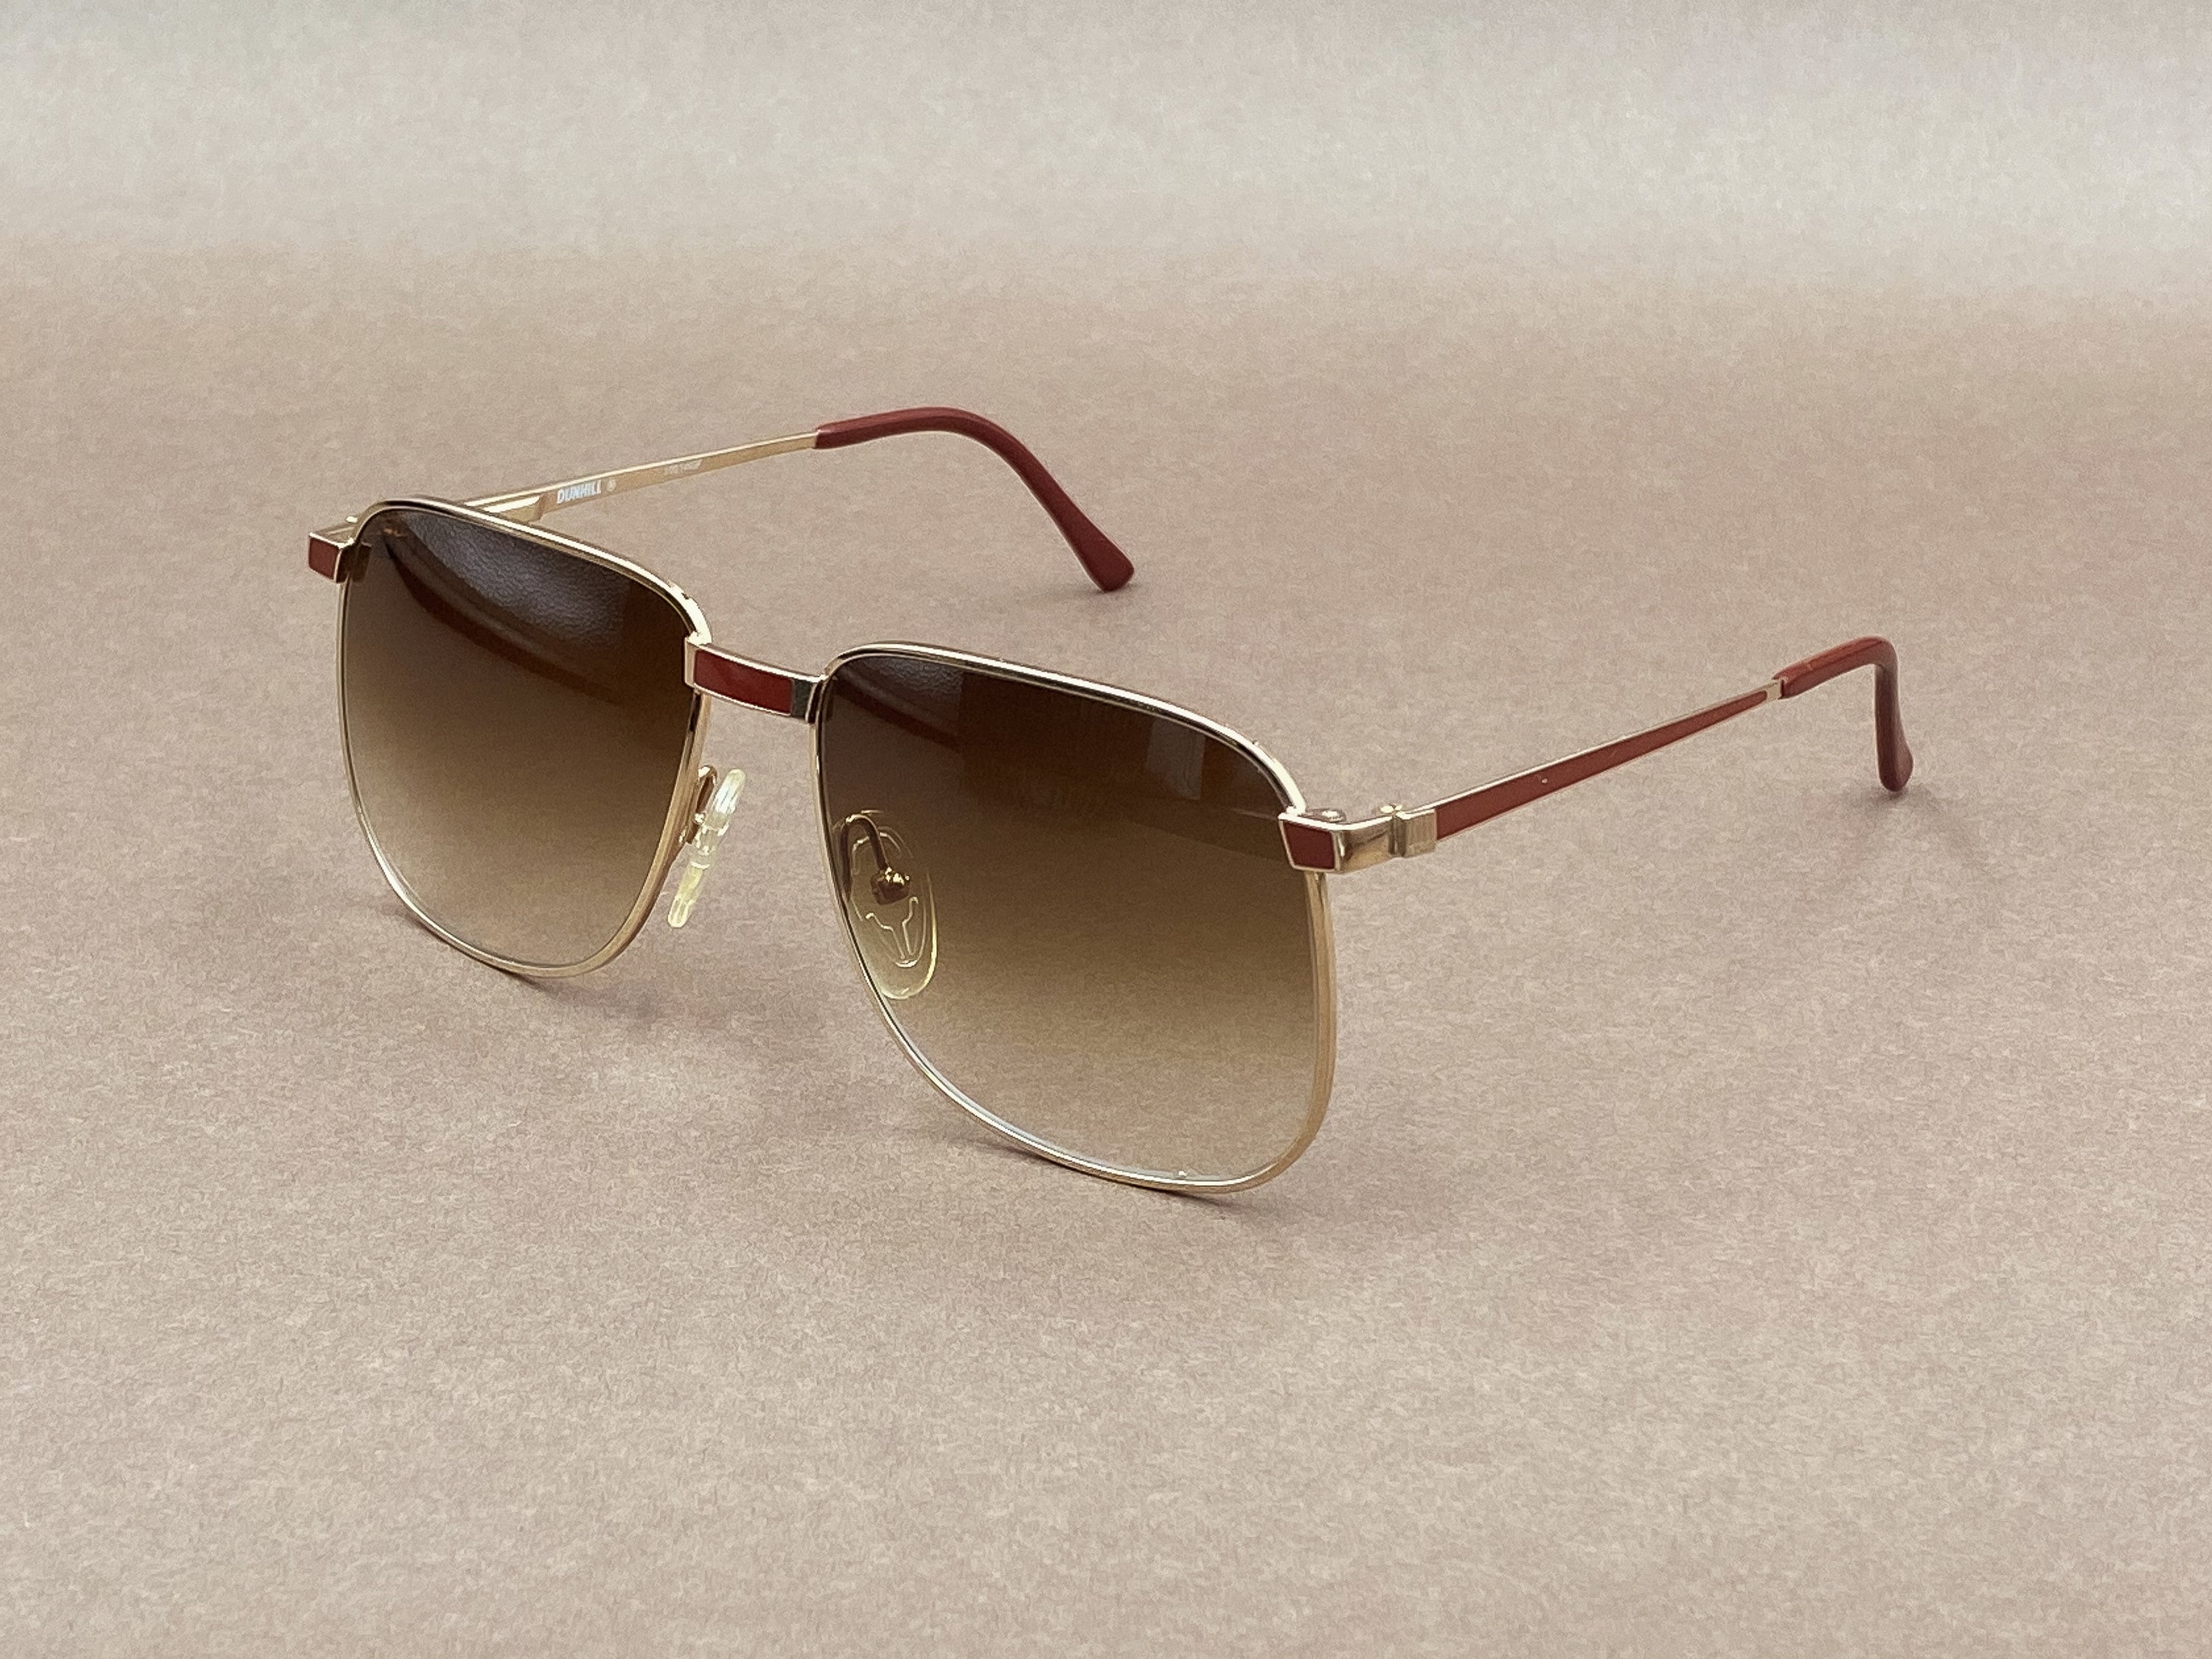 Missoni M408 sunglasses